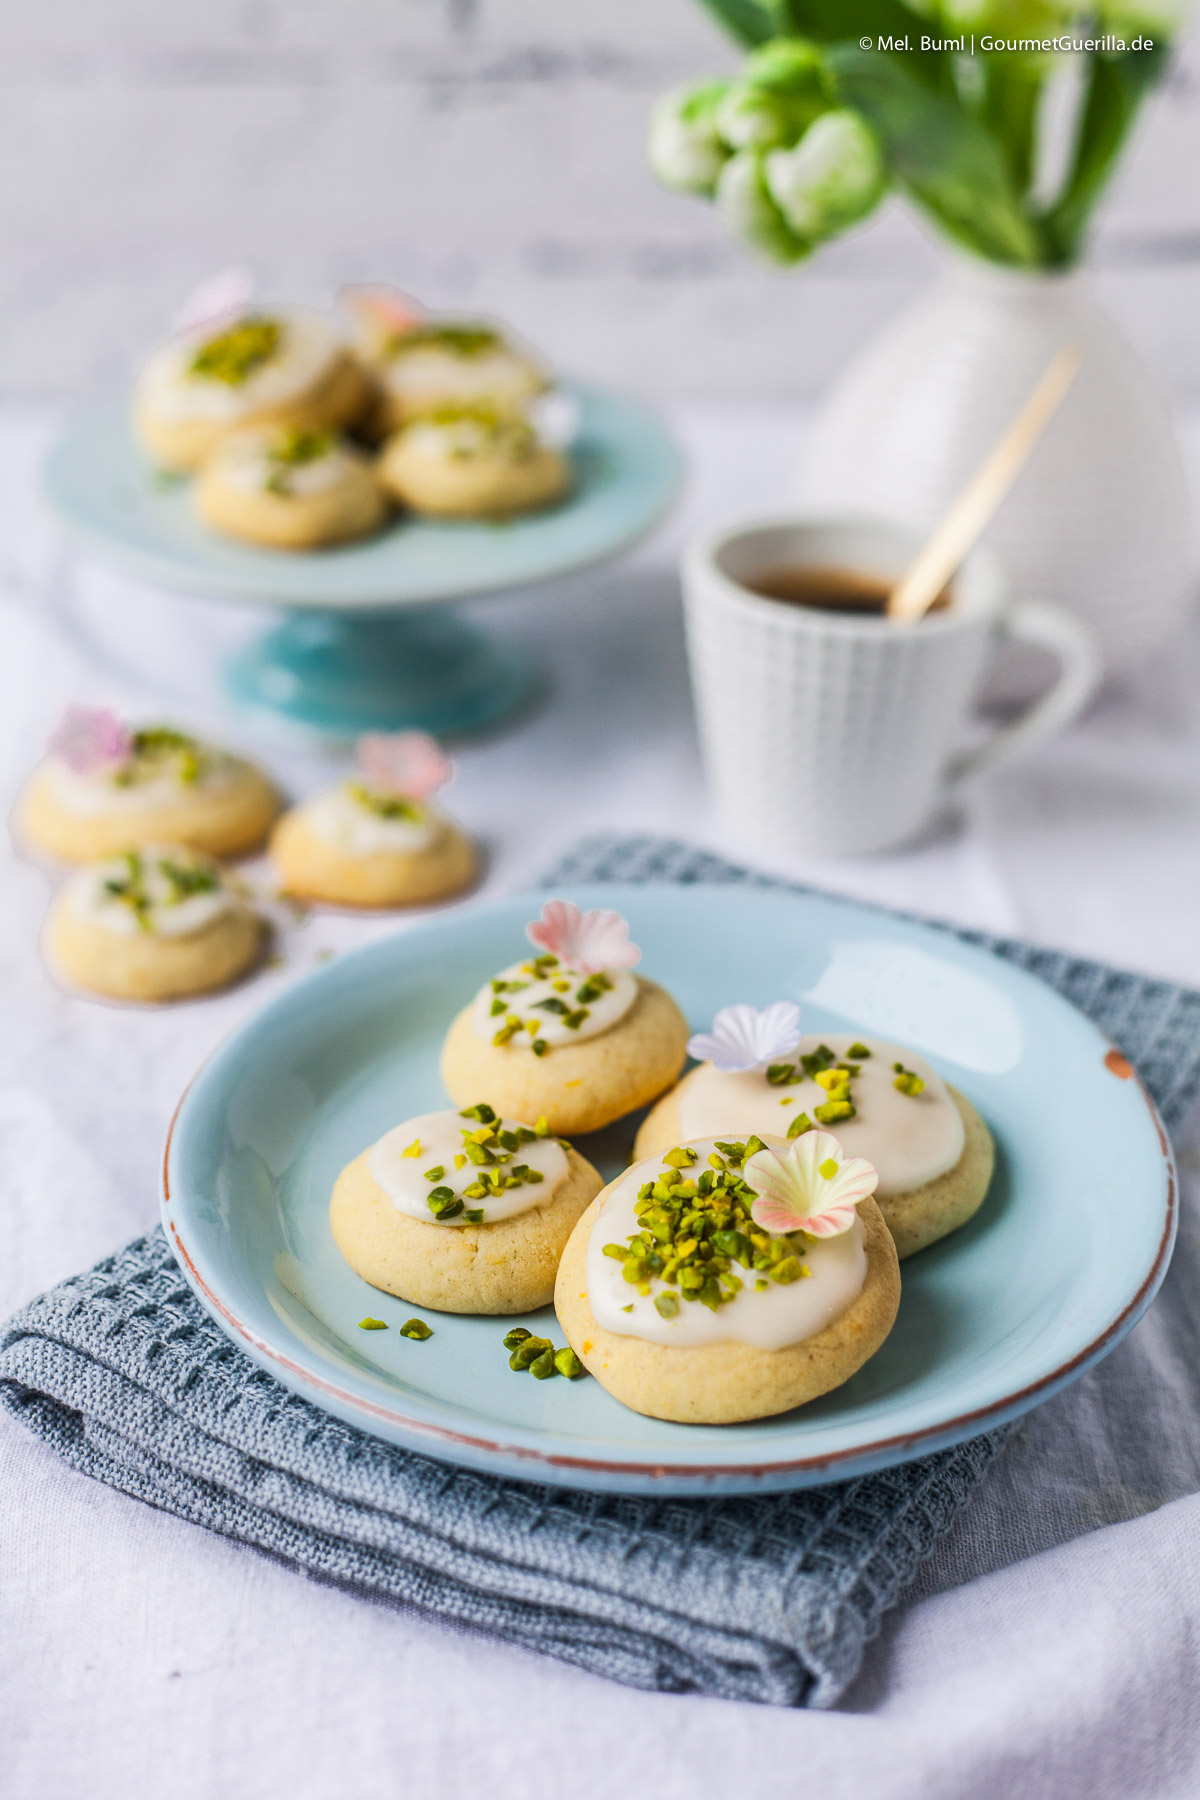 Spring Mailänderlis with orange and pistachios - airy dessert biscuits | GourmetGuerilla.de